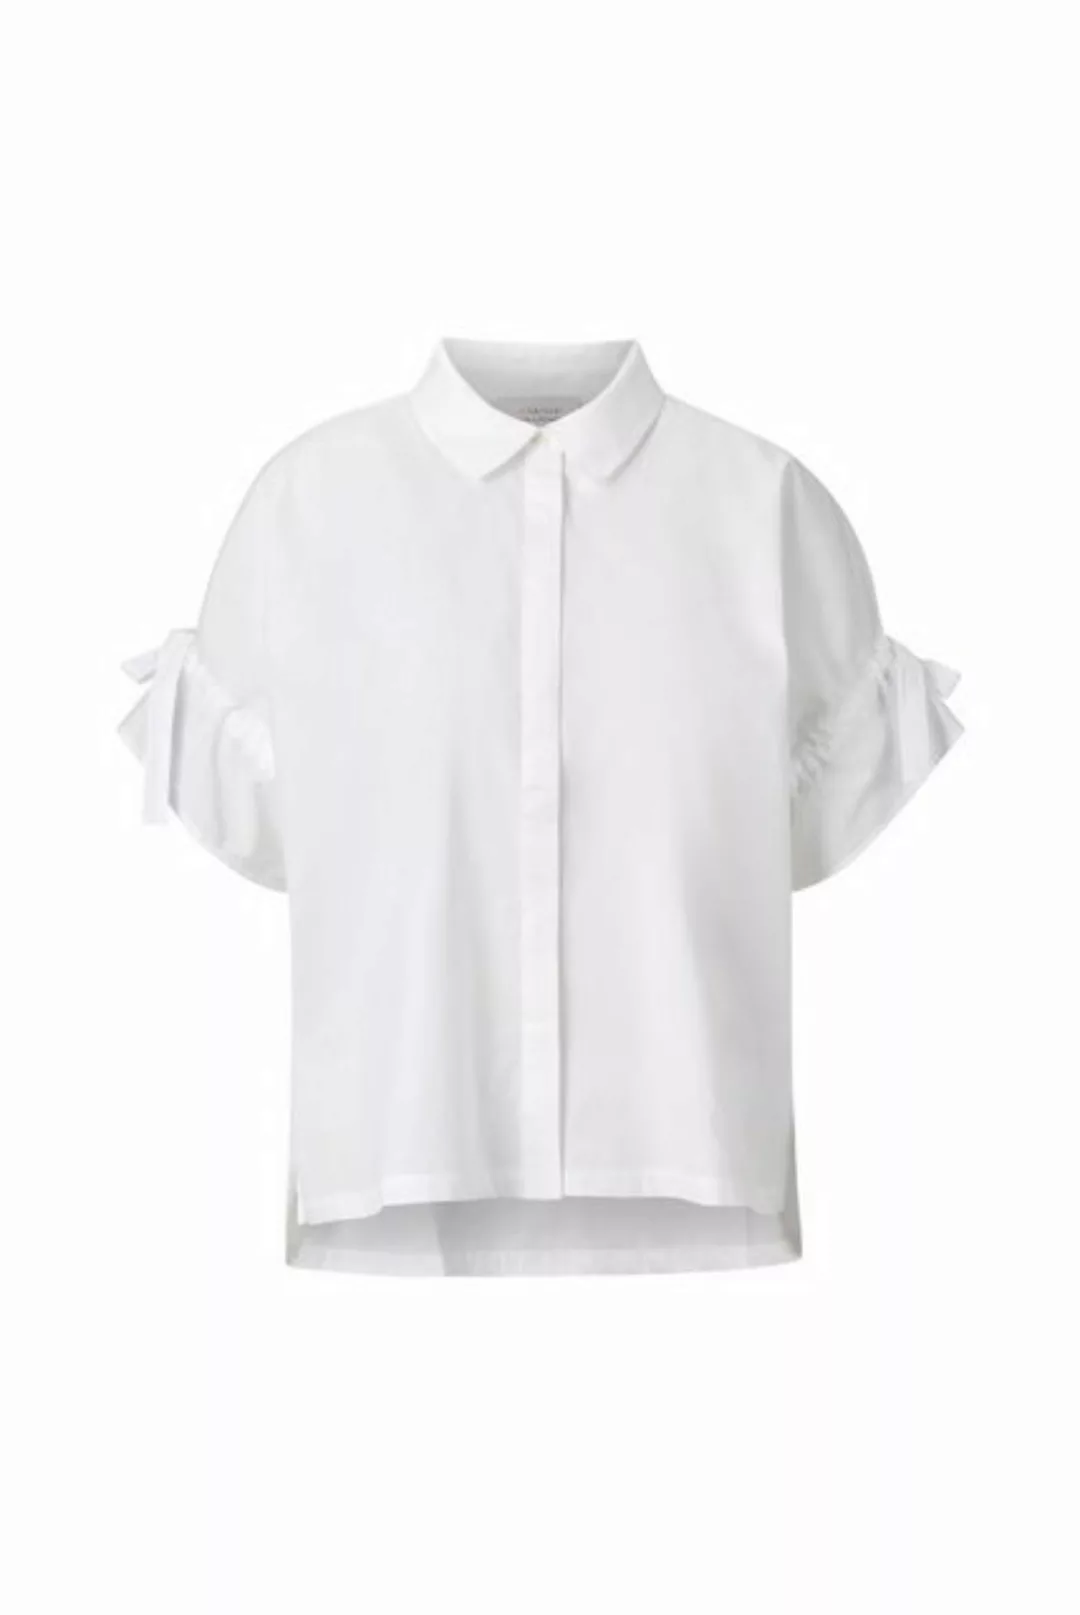 Rich & Royal Hemdbluse blouse with details günstig online kaufen